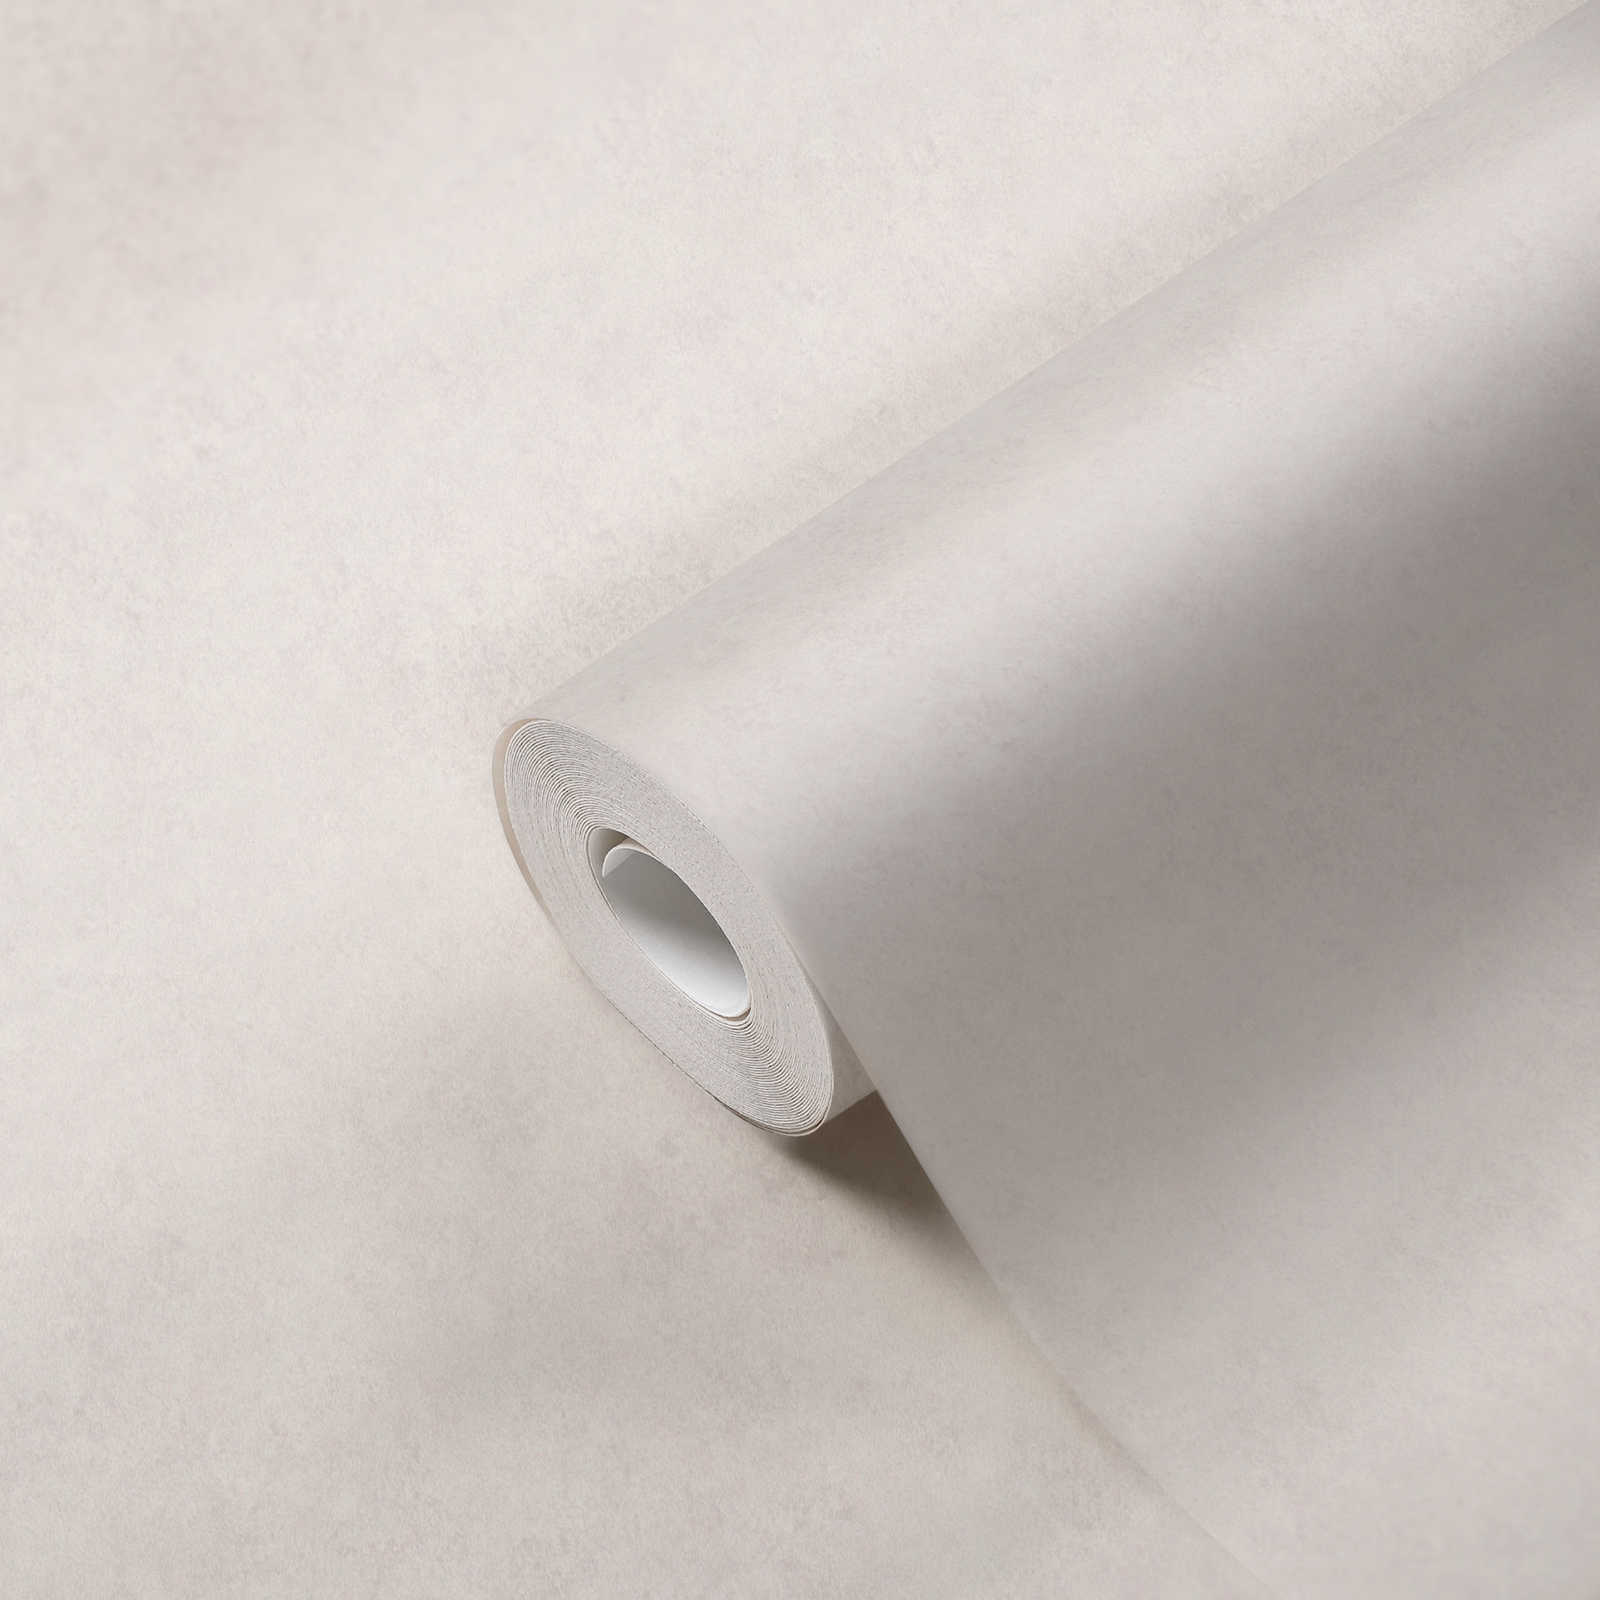             Non-woven wallpaper plain in plaster look - cream
        